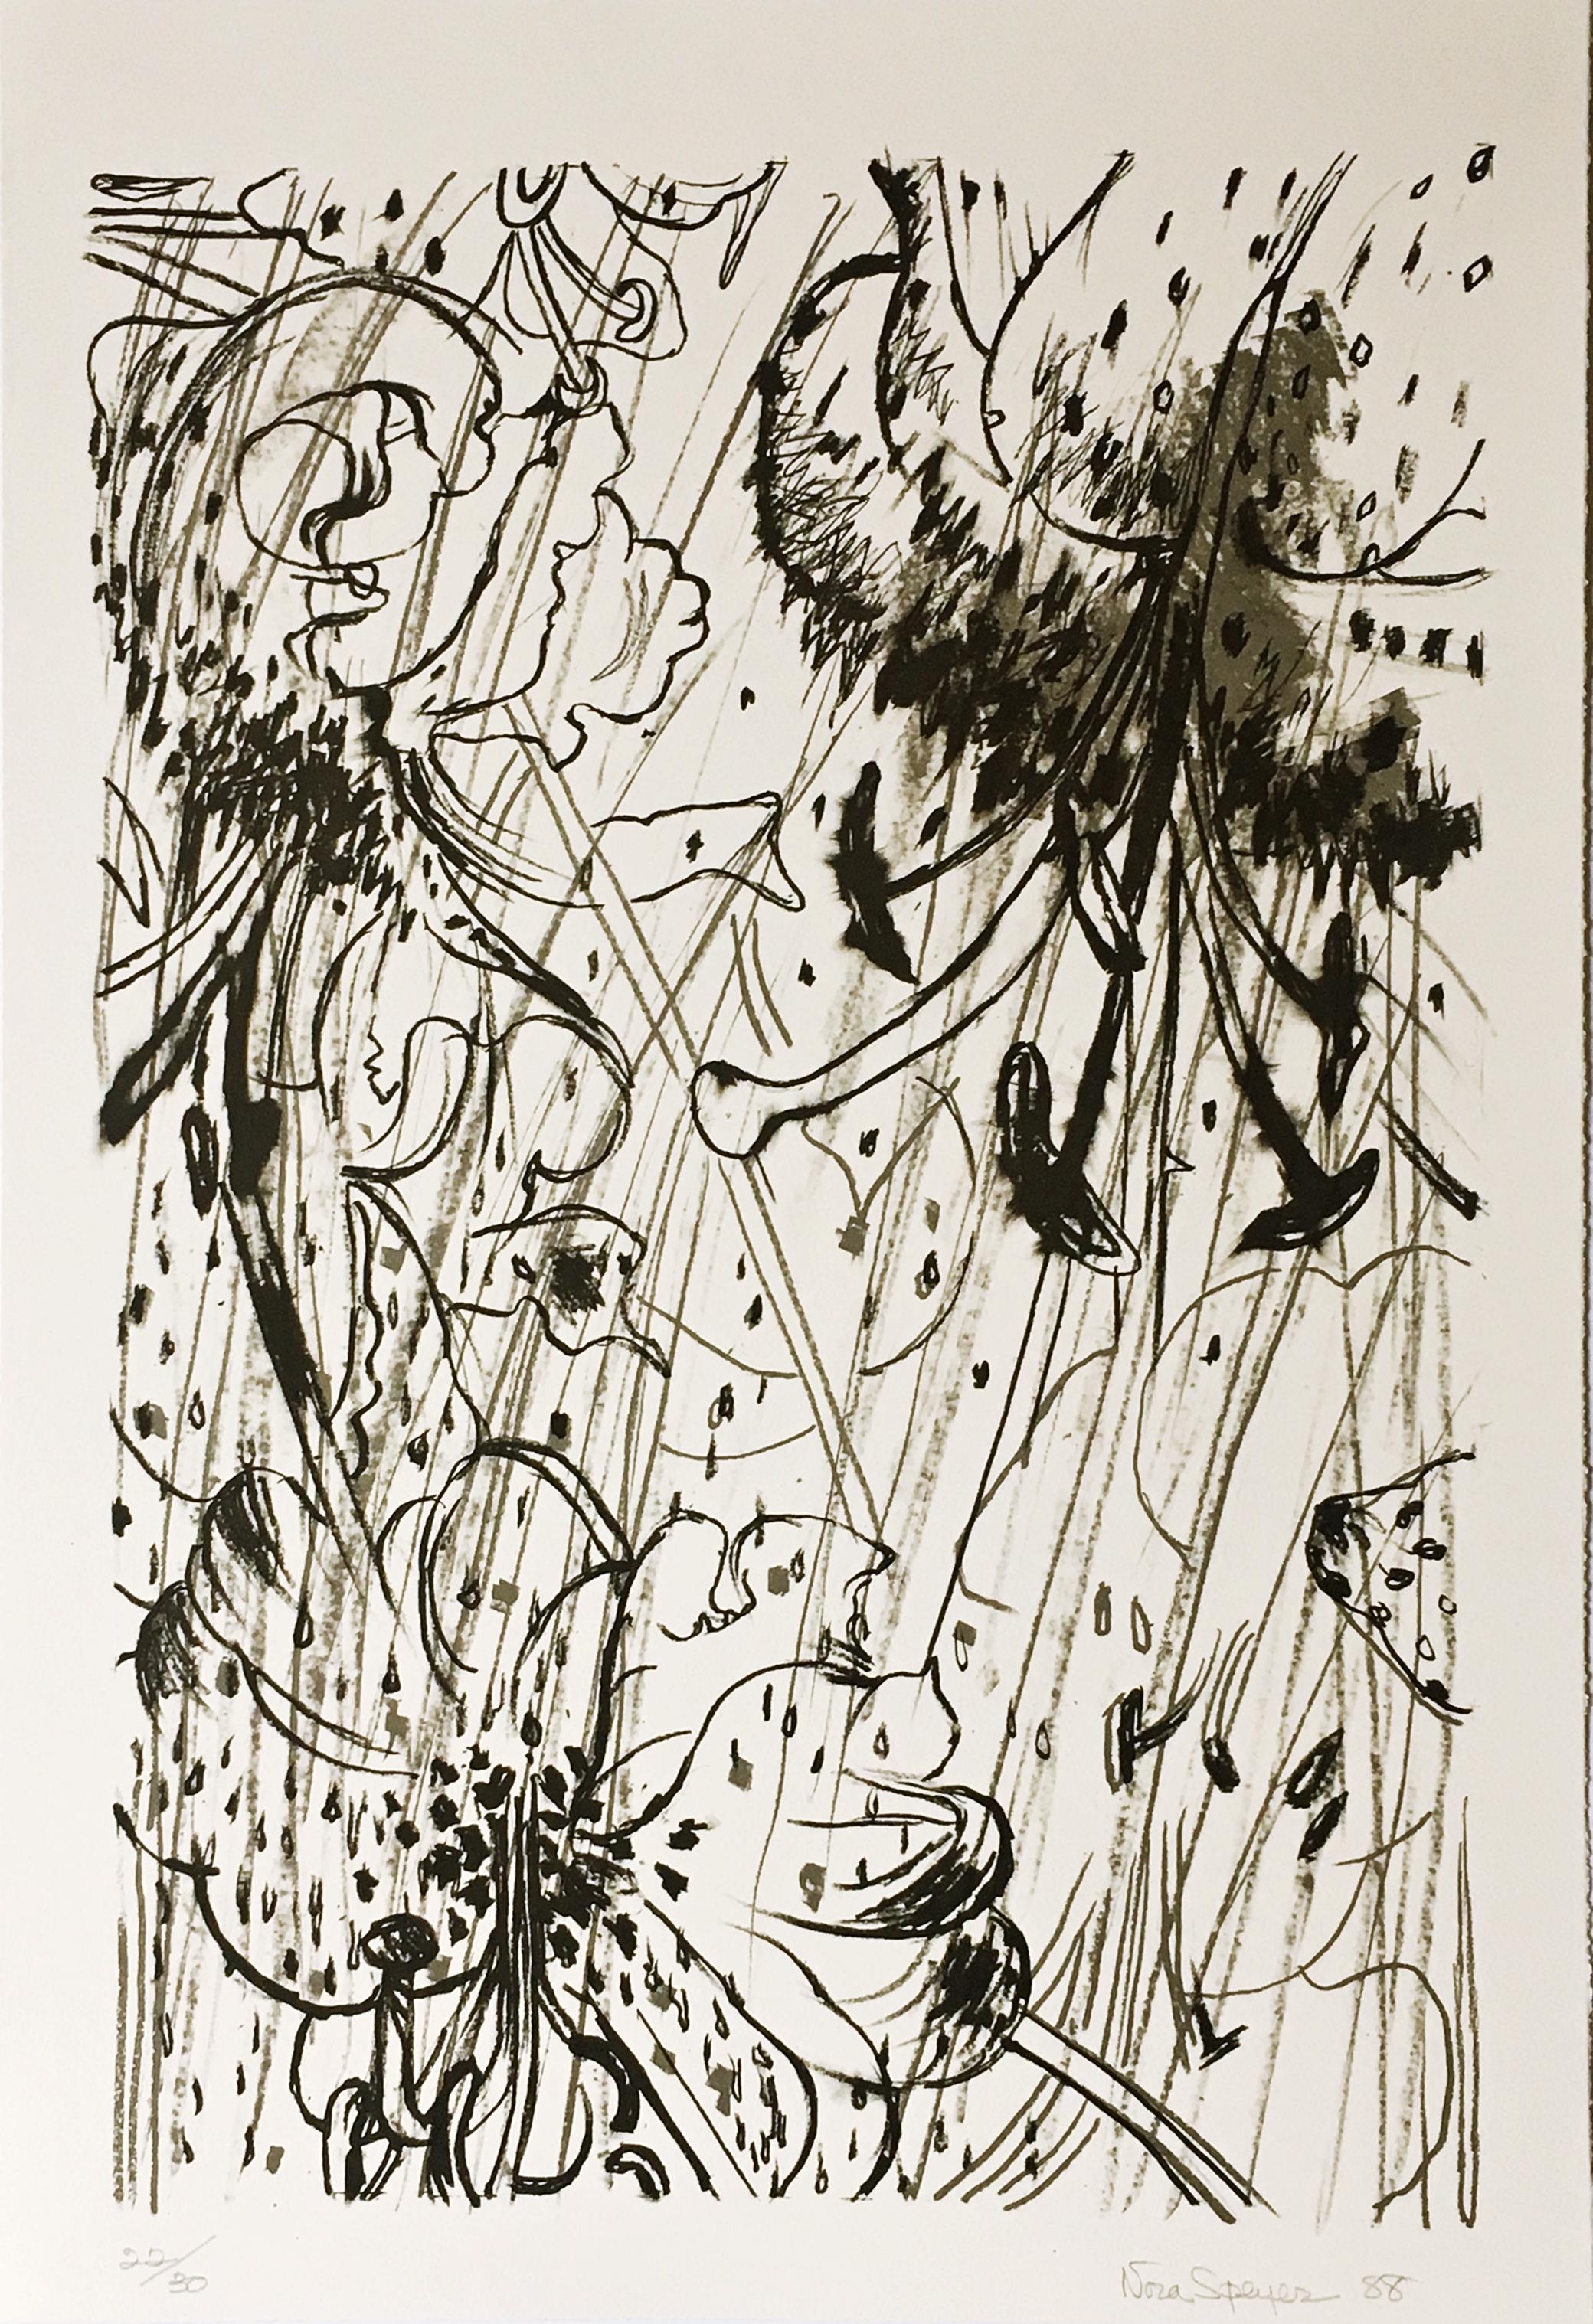 Nora Speyer
Ohne Titel, aus dem Portfolio der Long Point Gallery, 1988
Lithographie auf Papier mit Büttenrand
Handsigniert, nummeriert 22/30 und datiert auf der unteren Vorderseite
22 × 15 Zoll
Ungerahmt

Handsigniert, nummeriert 22/30 und datiert